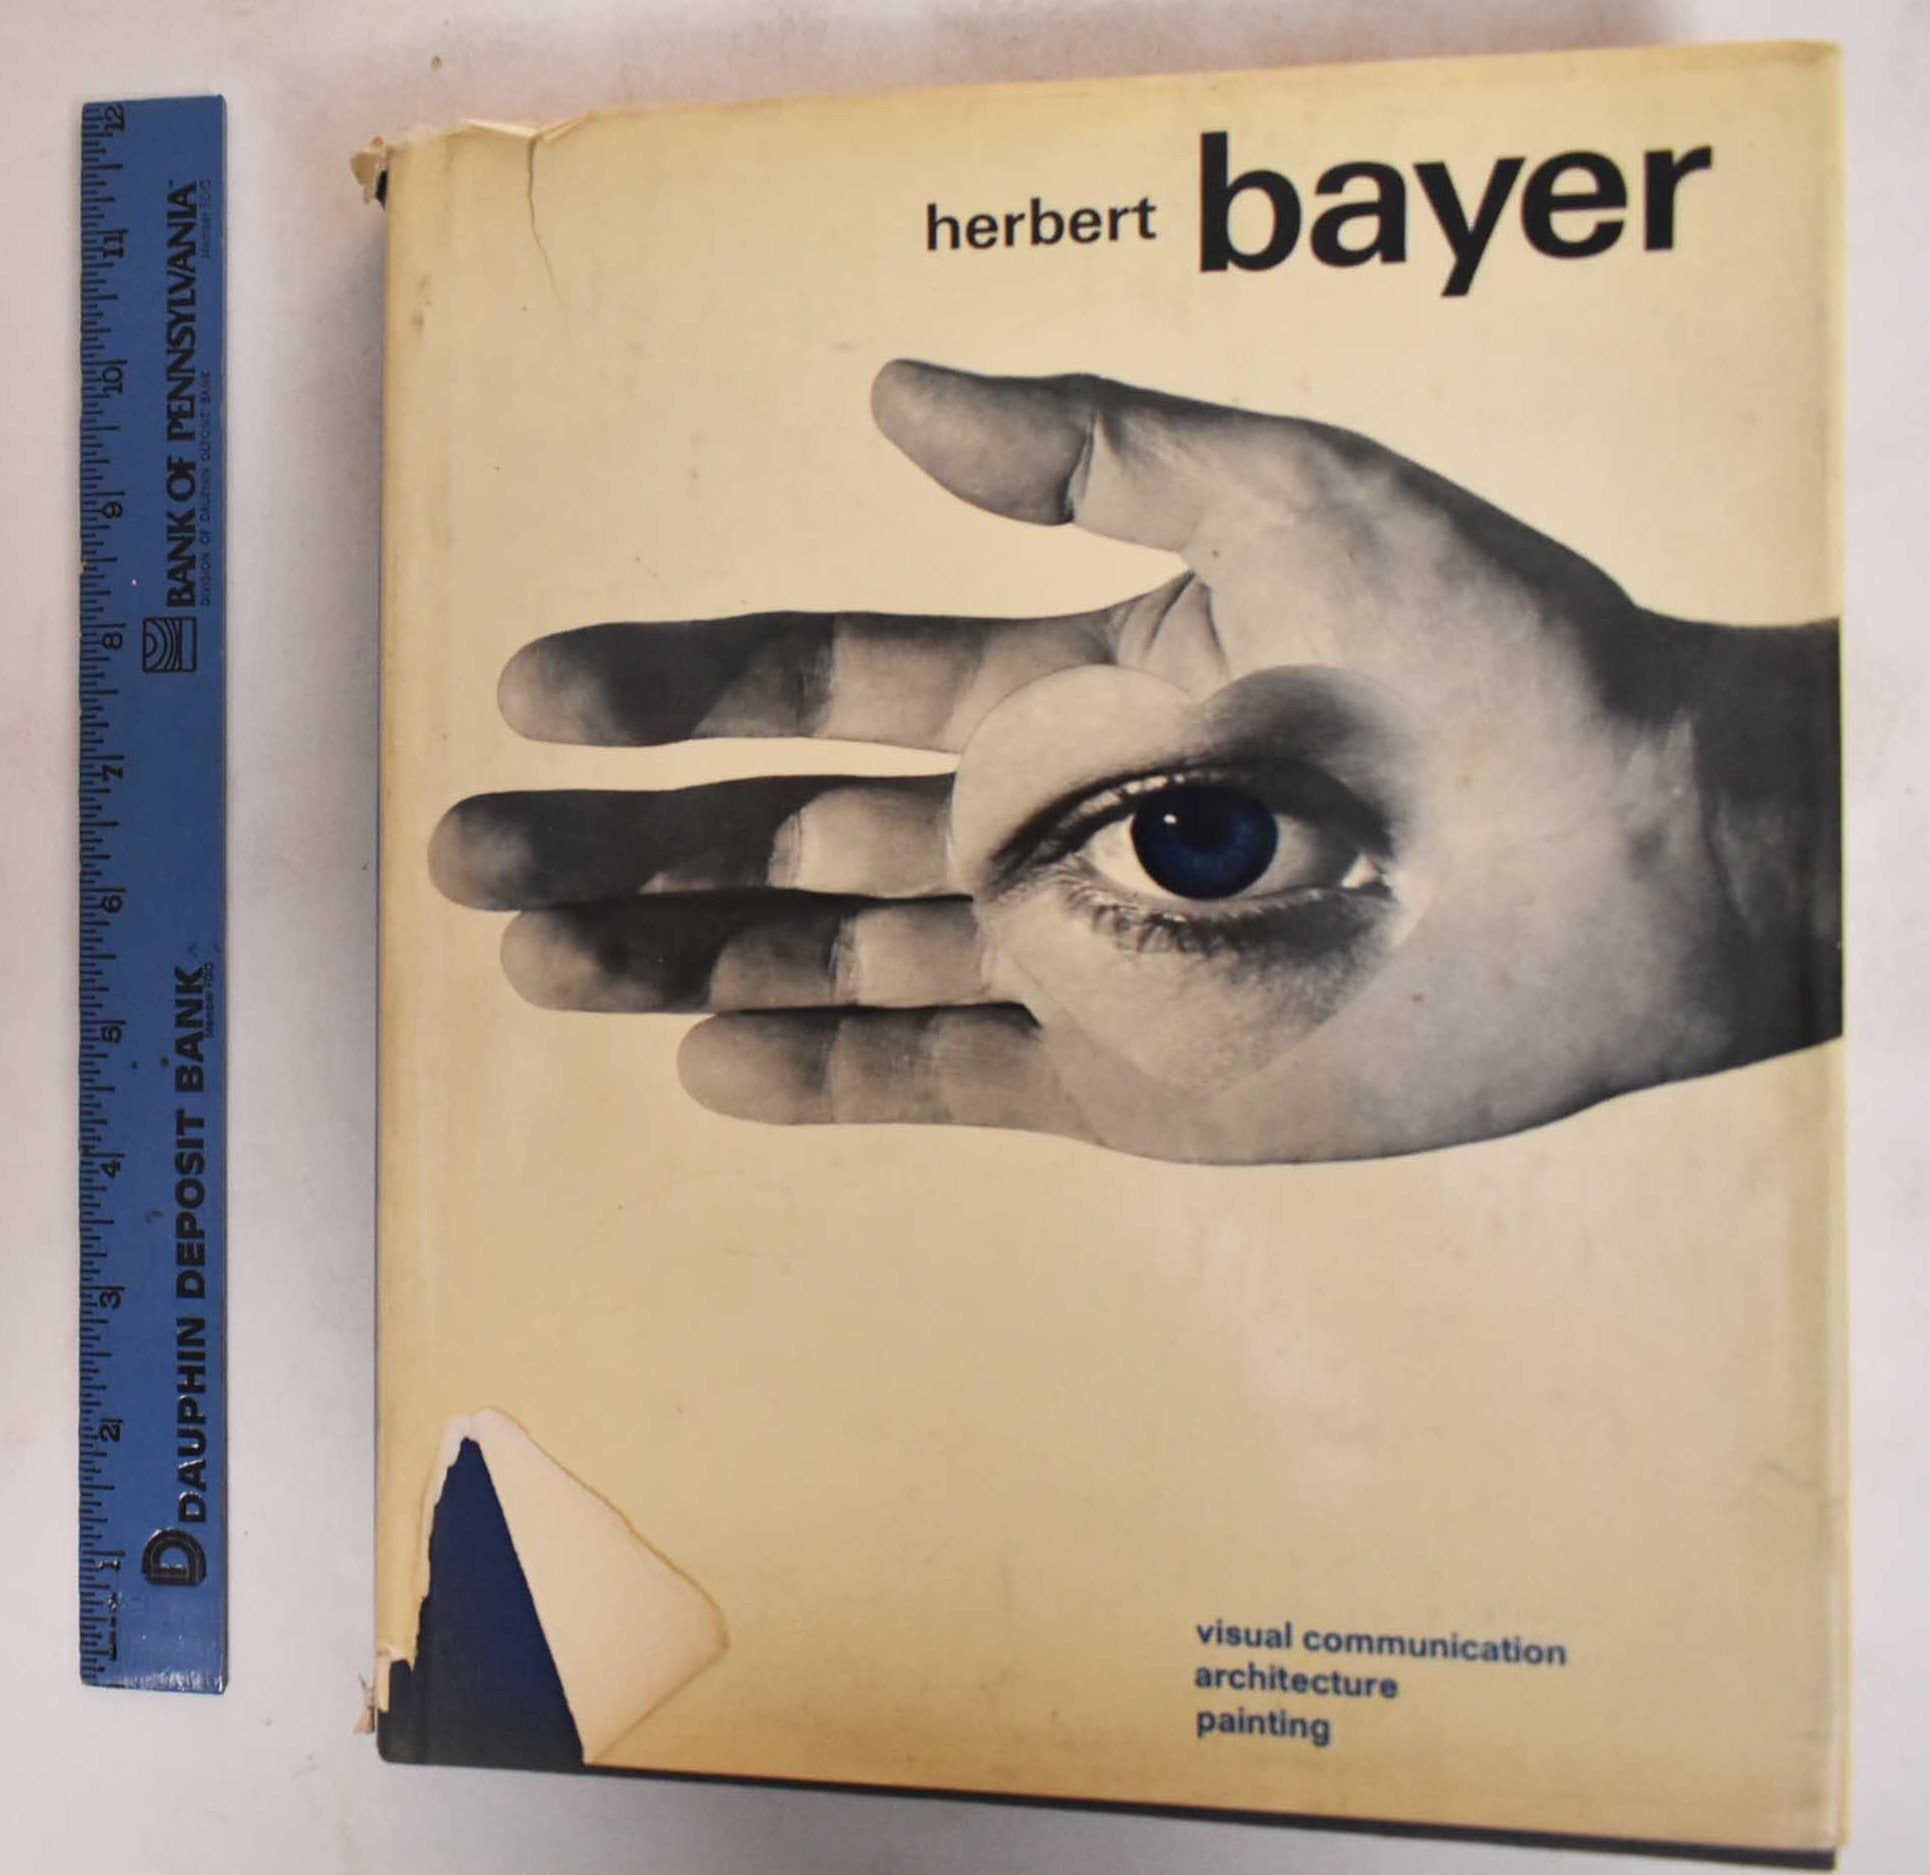 Herbert Bayer: Painter, Designer, Architect by Herbert Bayer on Mullen Books